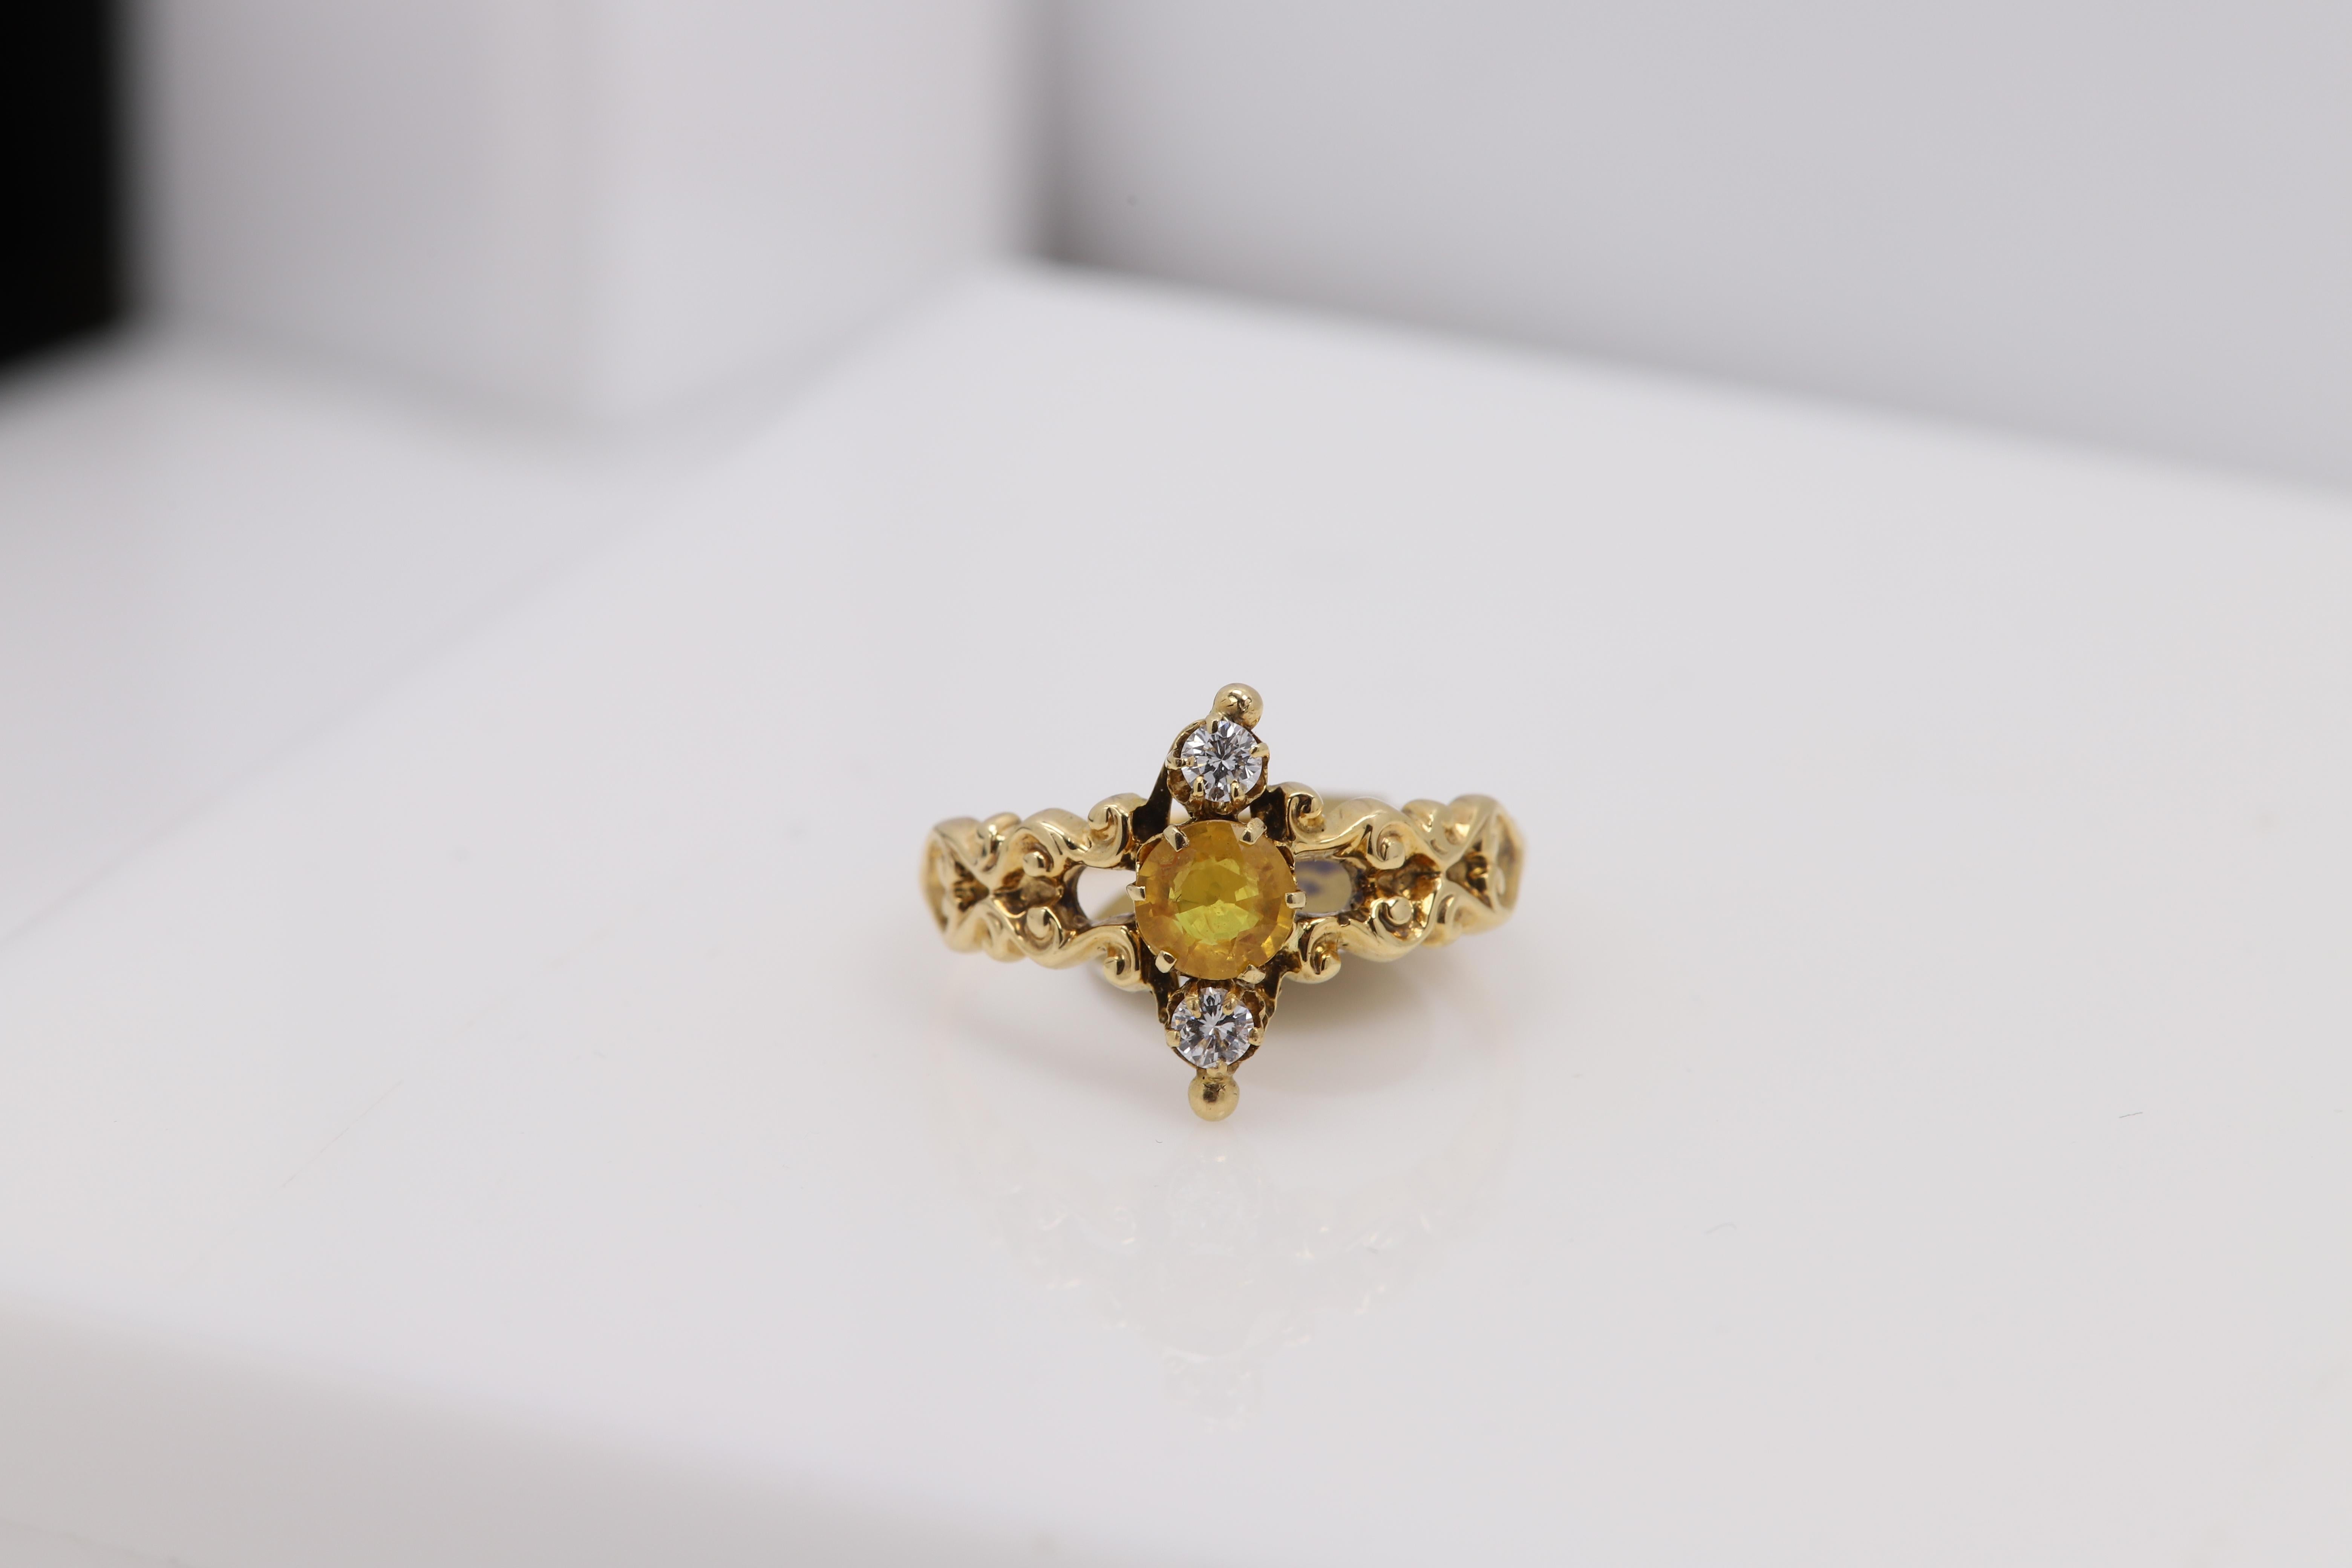 14k Gelbgold - 3 Stein Ring
Vintage Diamanten und gelber Saphir Ring
CIRCA 1940er Jahre
Gewicht ca. 3.0 Gramm
Fingergröße 6
Runder gelber Saphir ca. 5,0 mm groß
Runde Diamanten ca. 2,7 mm
alle Natursteine
(# bjn 9150091)